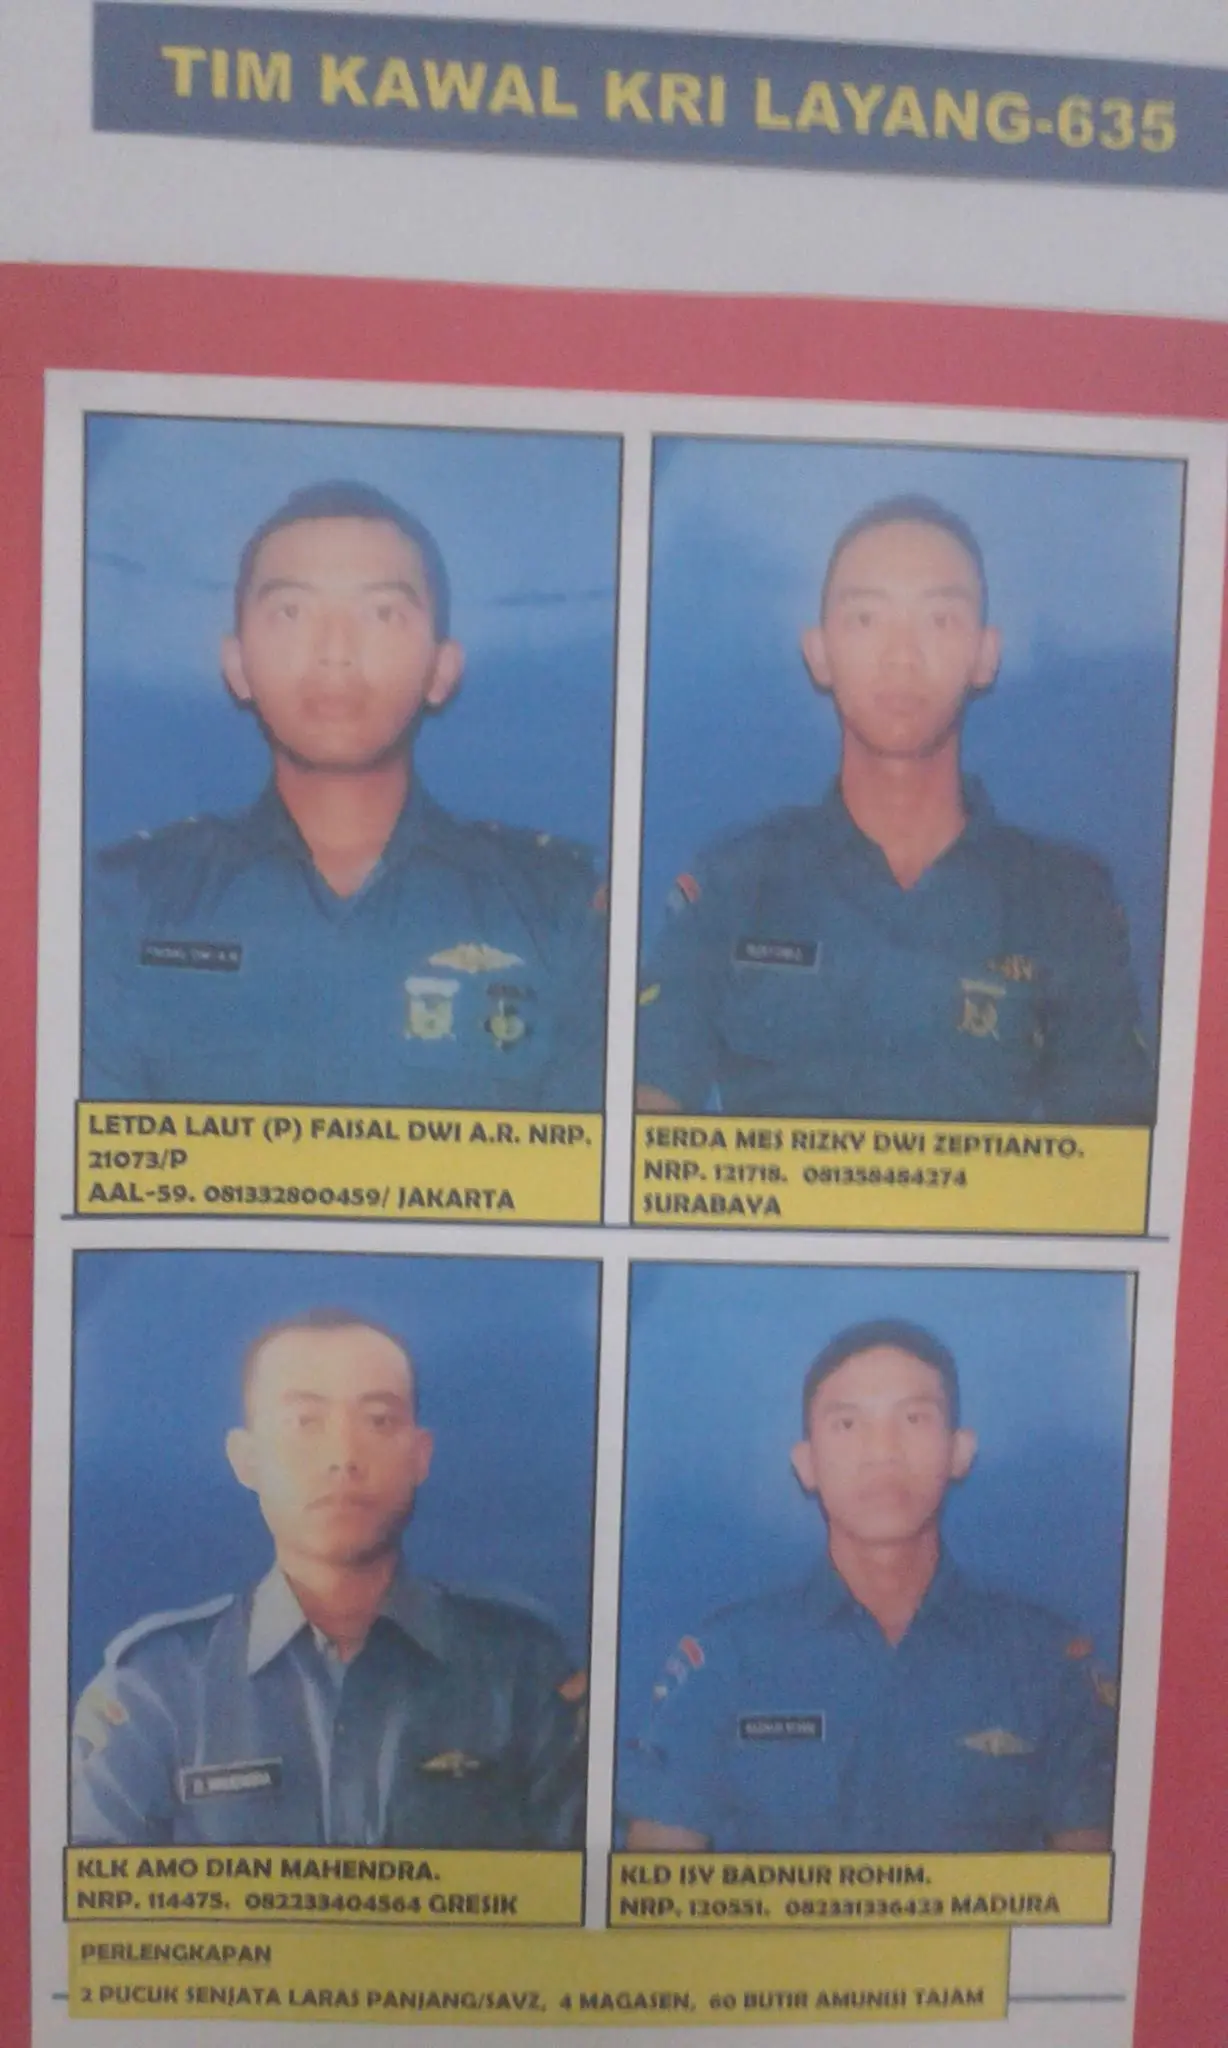 Kurang lebih tujuh bulan sudah empat prajurit TNI AL hilang di perairan perbatasan Indonesia-Filipina sejak Desember tahun lalu. (Liputan6.com/Yoseph Ikanubun).